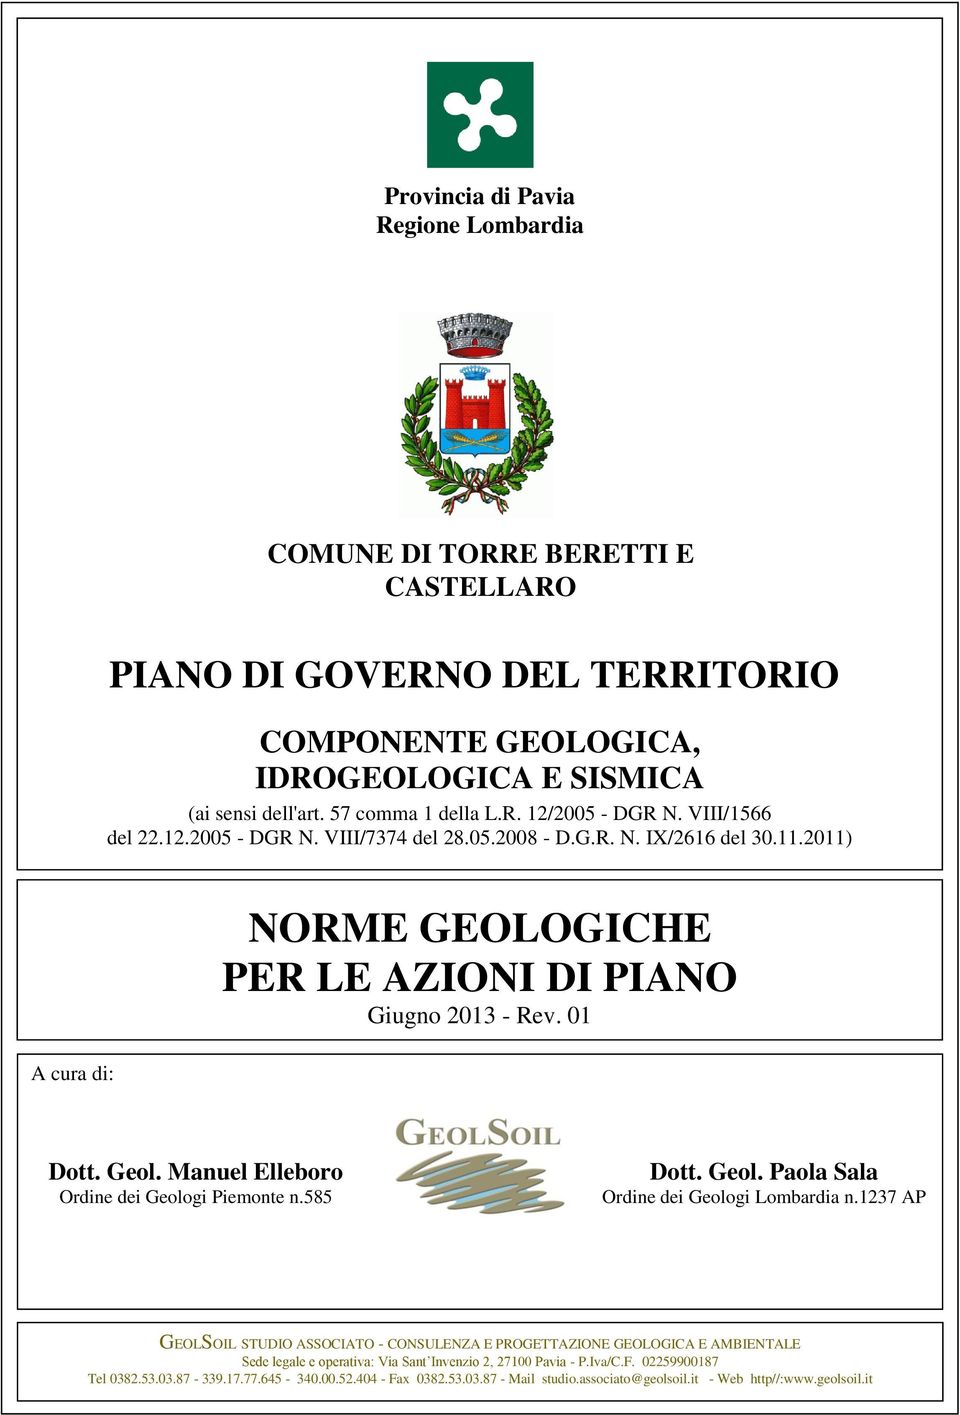 Manuel Elleboro Ordine dei Geologi Piemonte n.585 Dott. Geol. Paola Sala Ordine dei Geologi Lombardia n.